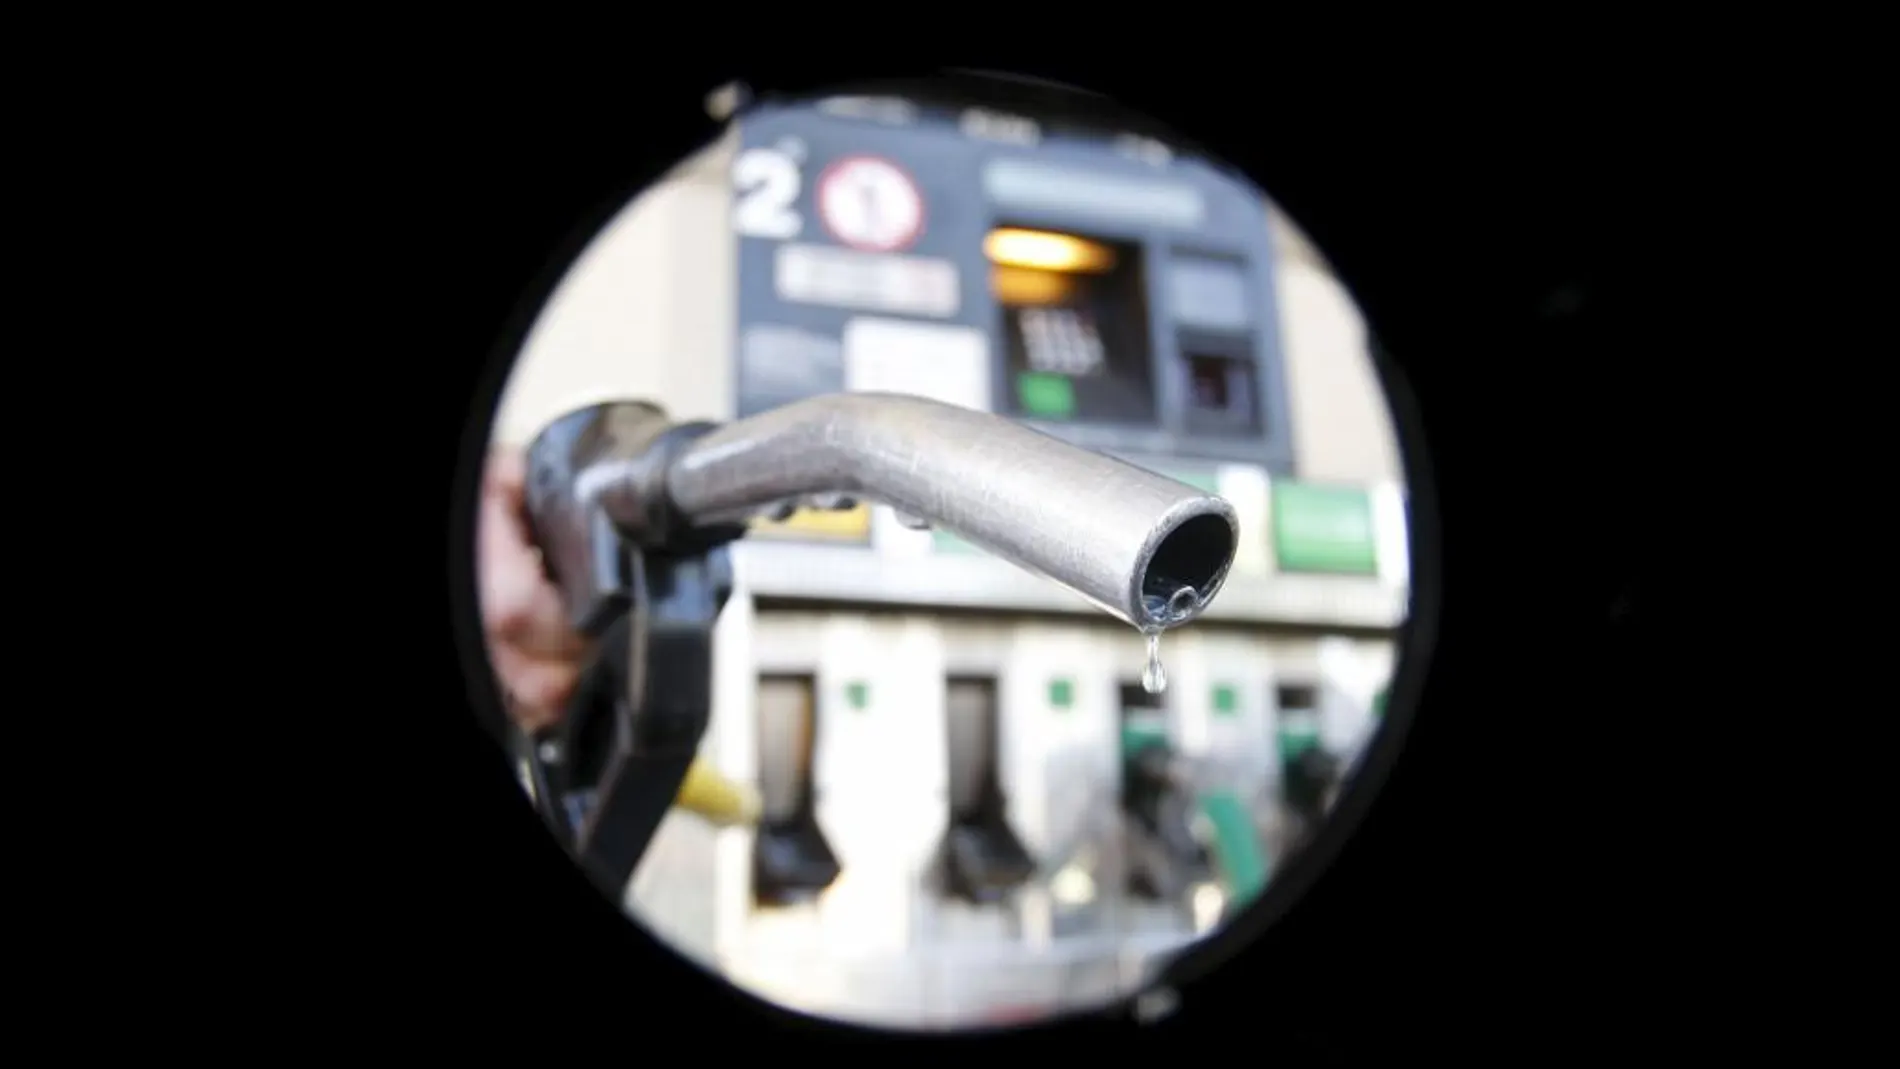 La app PagoClick Repsol agilizará el proceso de repostar gasolina